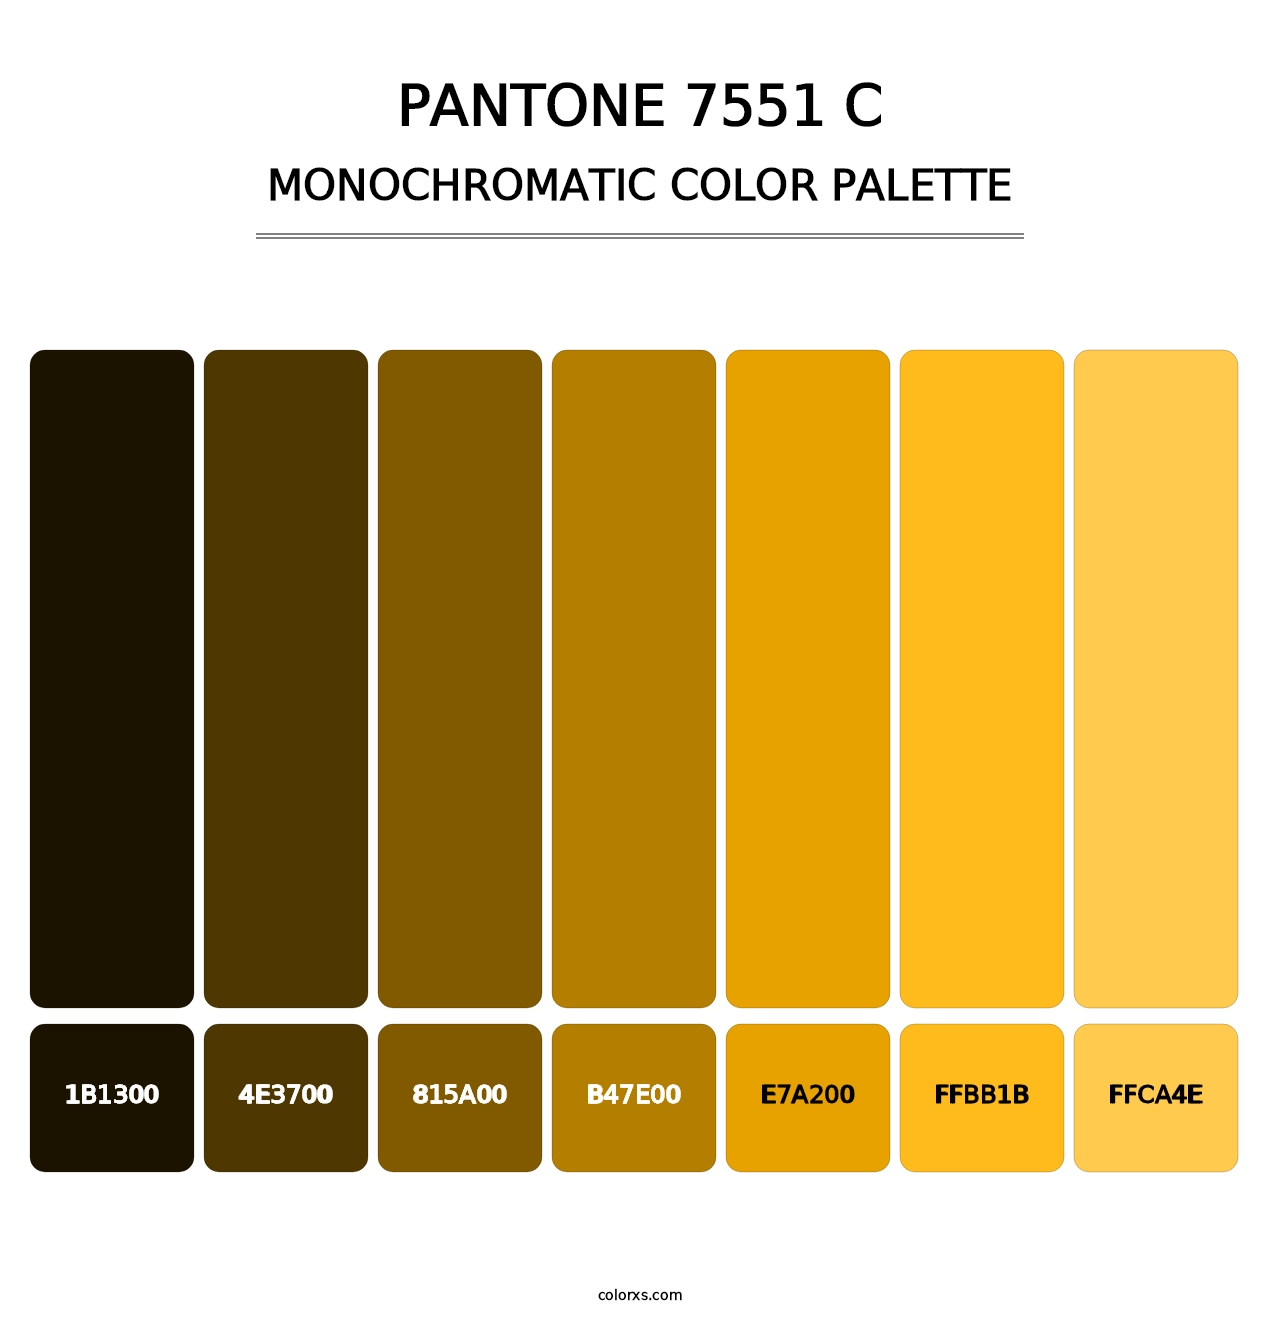 PANTONE 7551 C - Monochromatic Color Palette